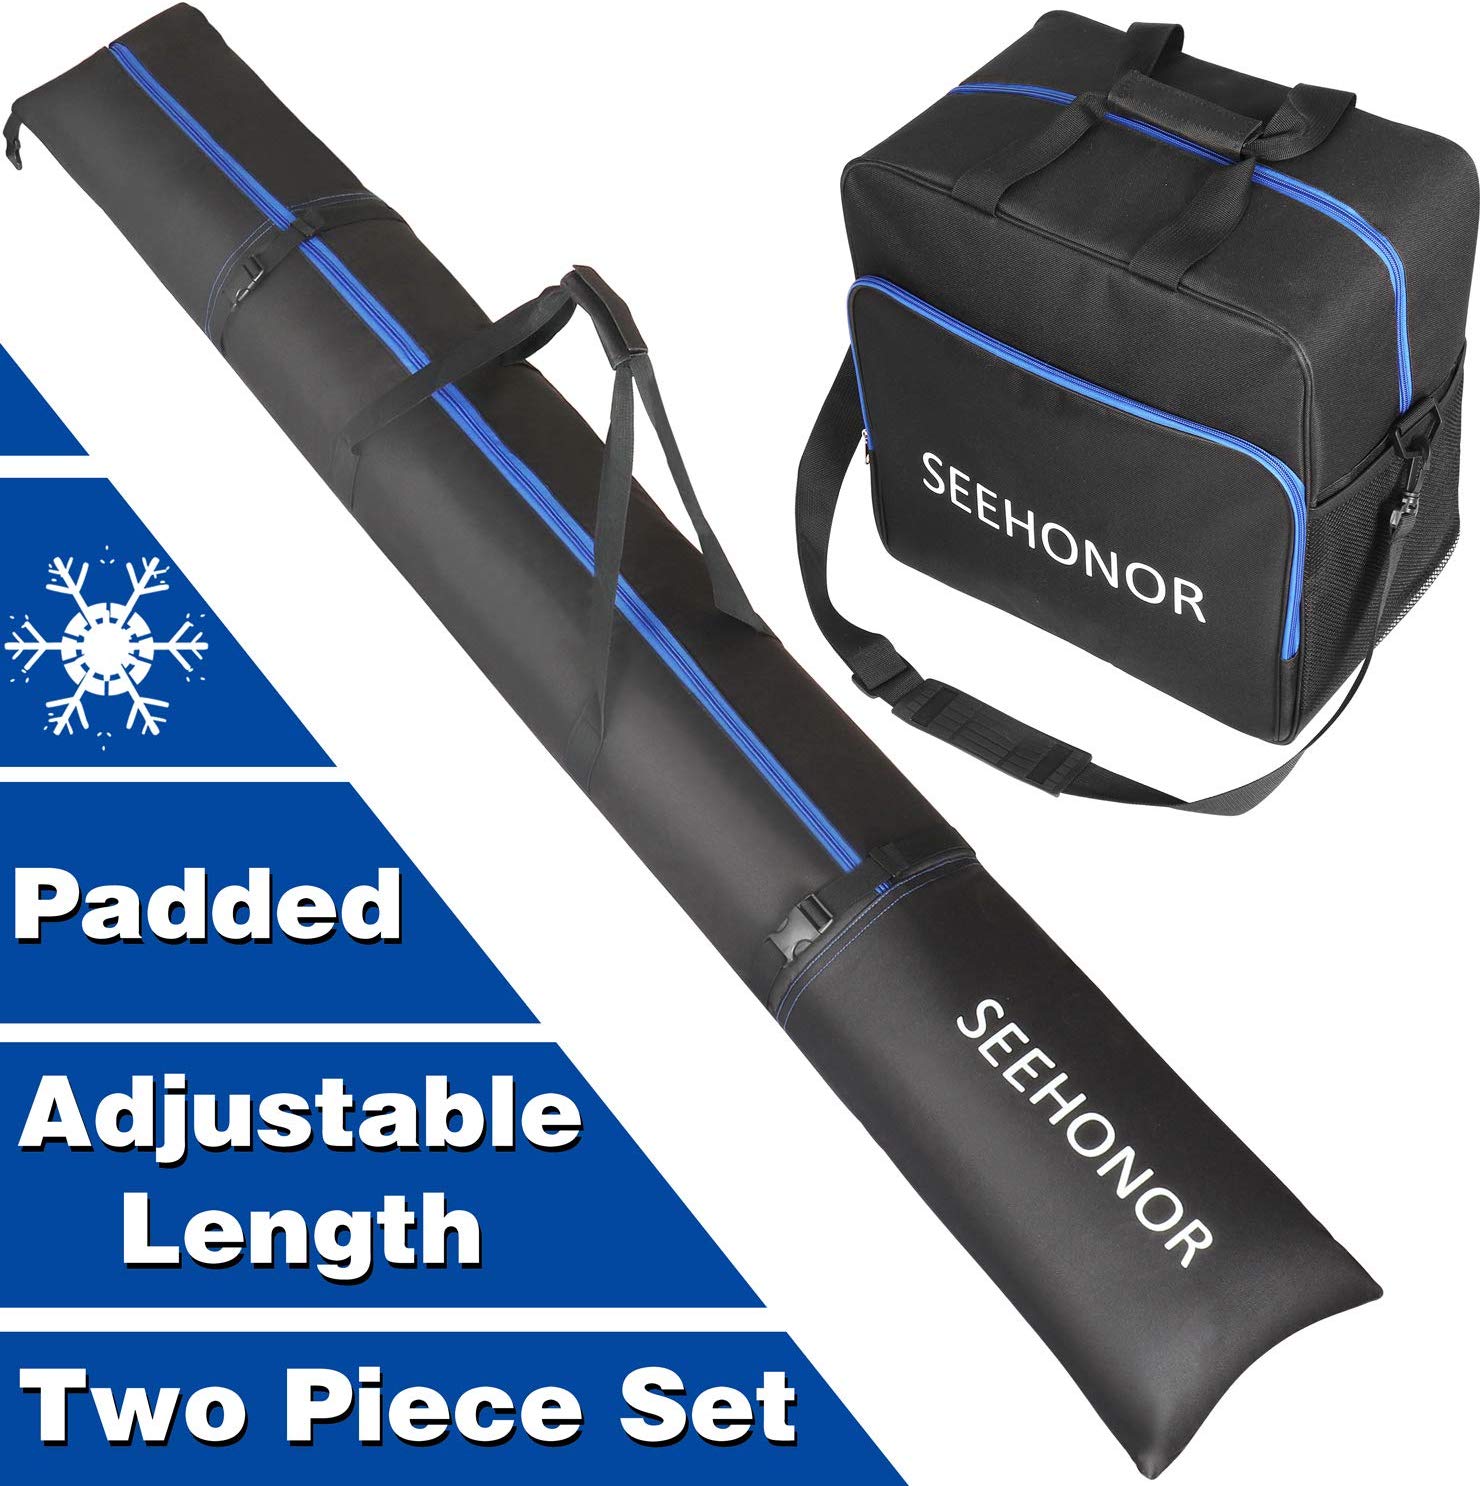 SEEHONOR Padded Ski and Boot Bag Combo